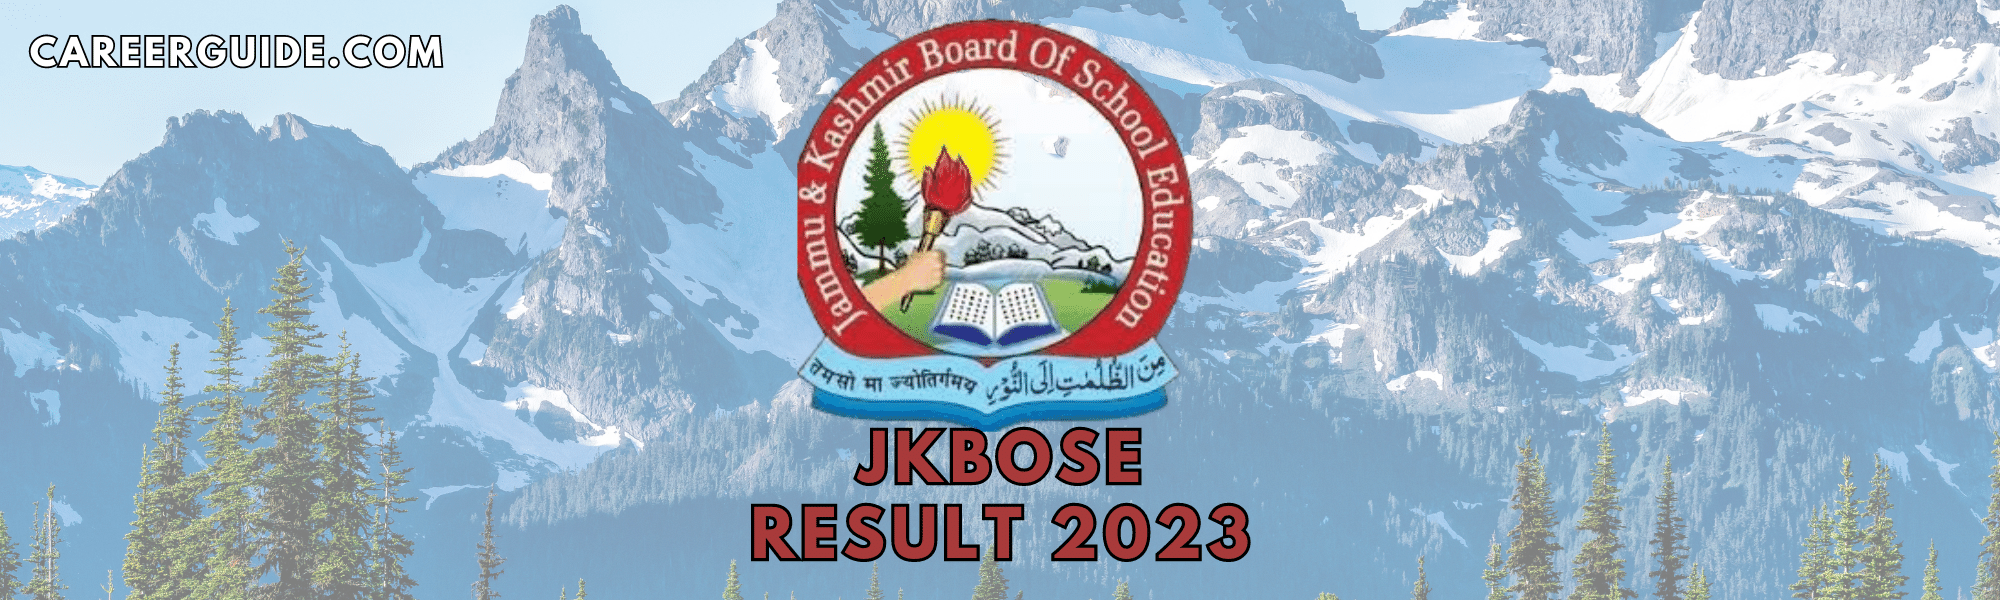 JKBOSE 12th result 2023-careerguide.com